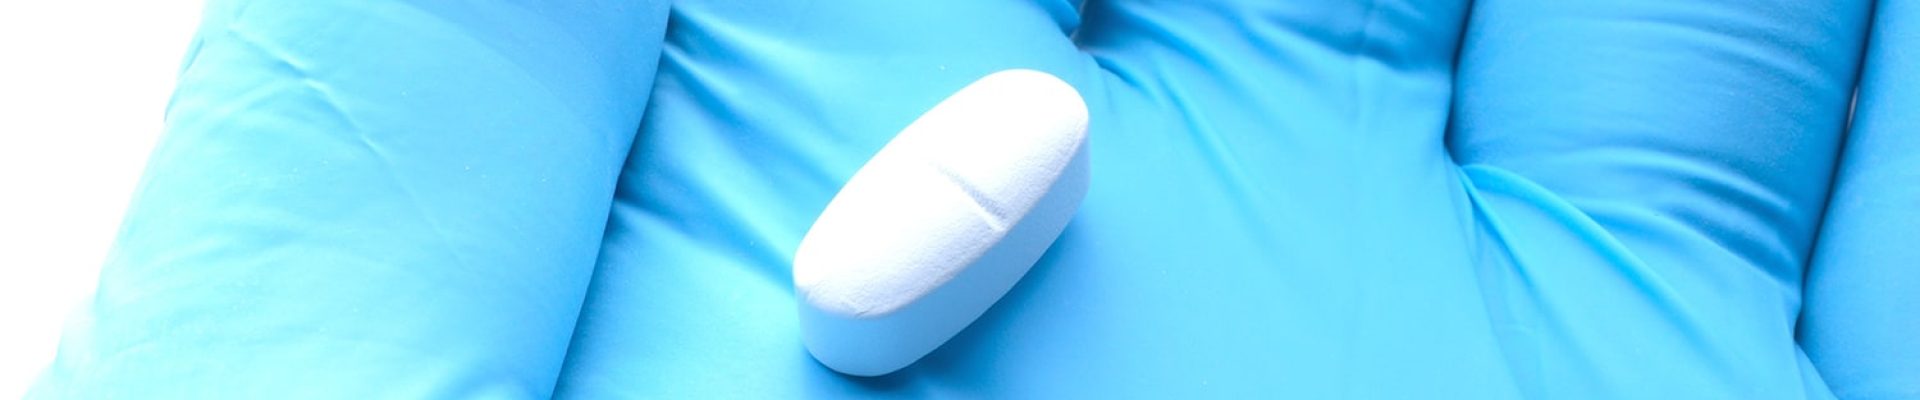 antibiotico para dolor extraccion muela